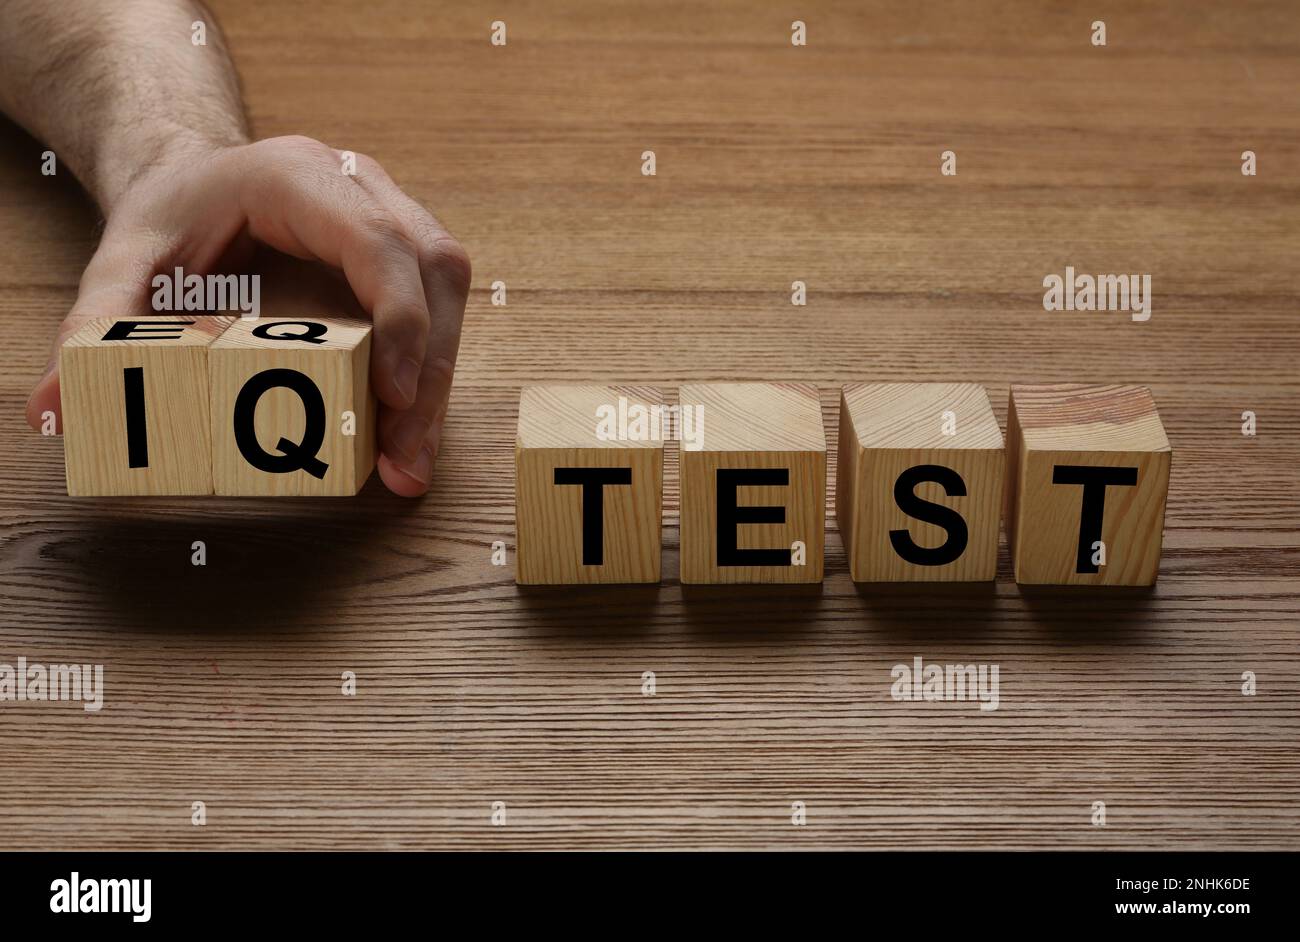 Uomo che prende cubi con testo IQ Test su sfondo di legno, primo piano Foto Stock